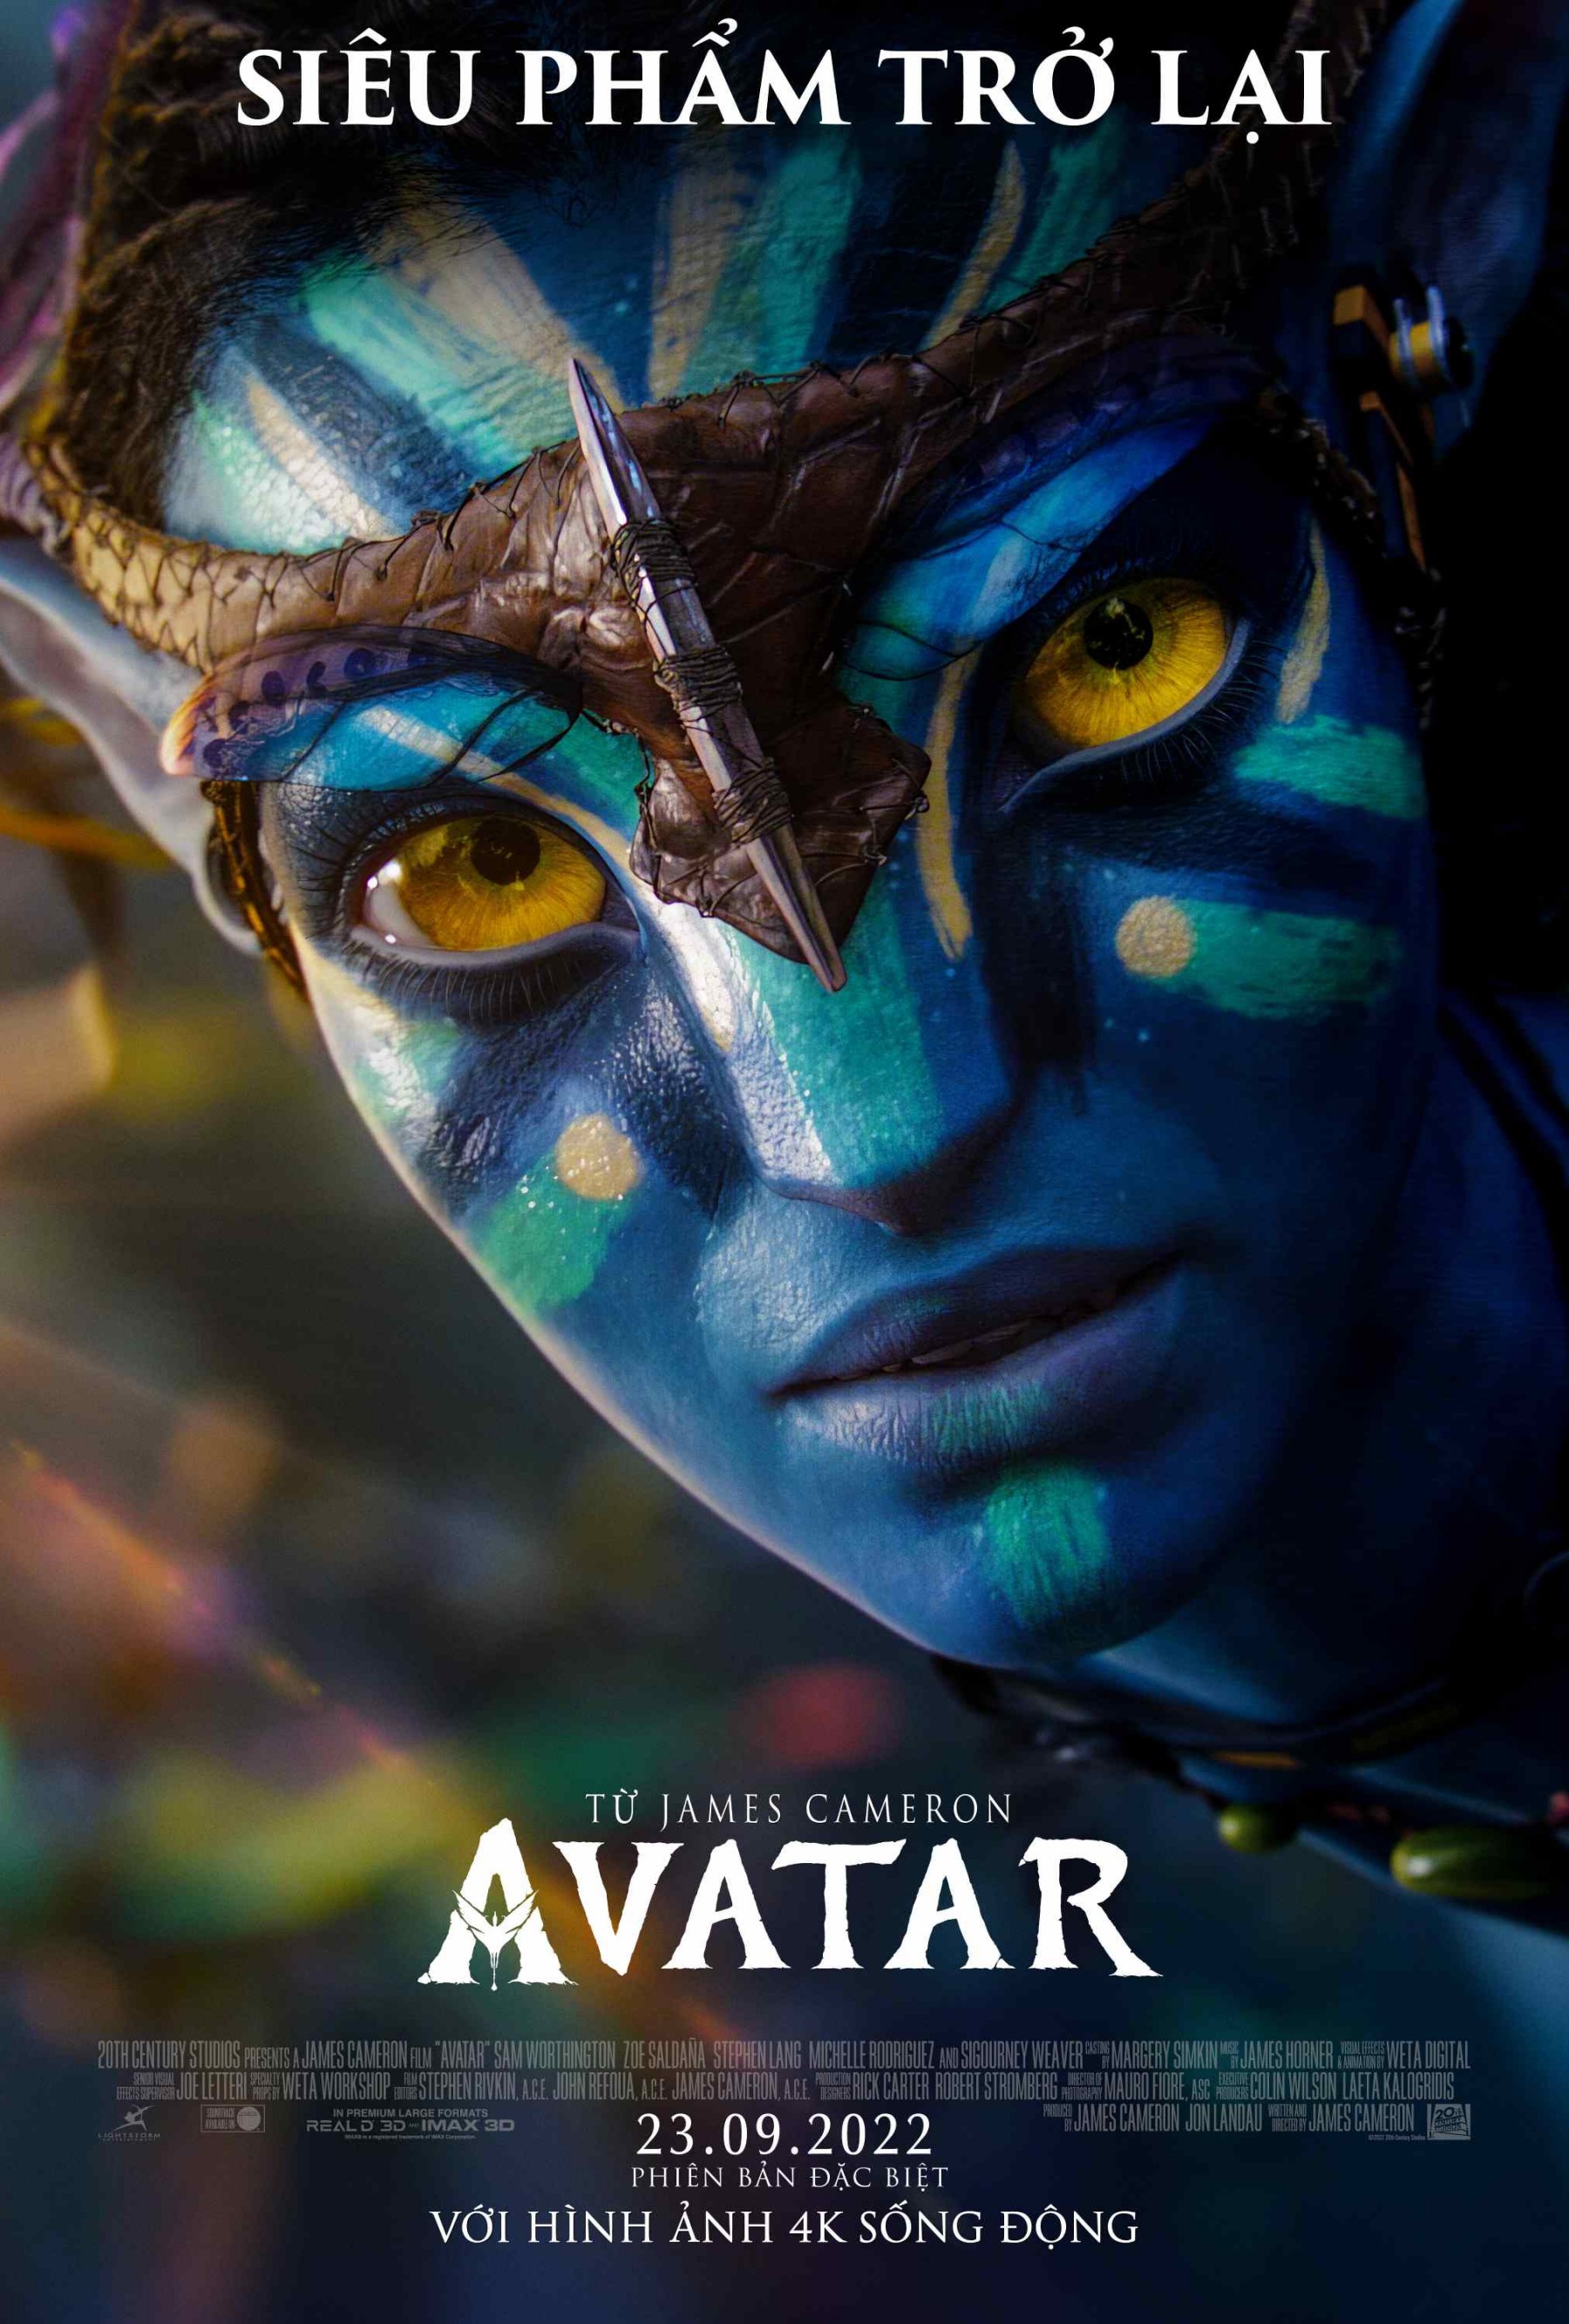 Lịch chiếu và cách mua vé xem phim Avatar tại các rạp